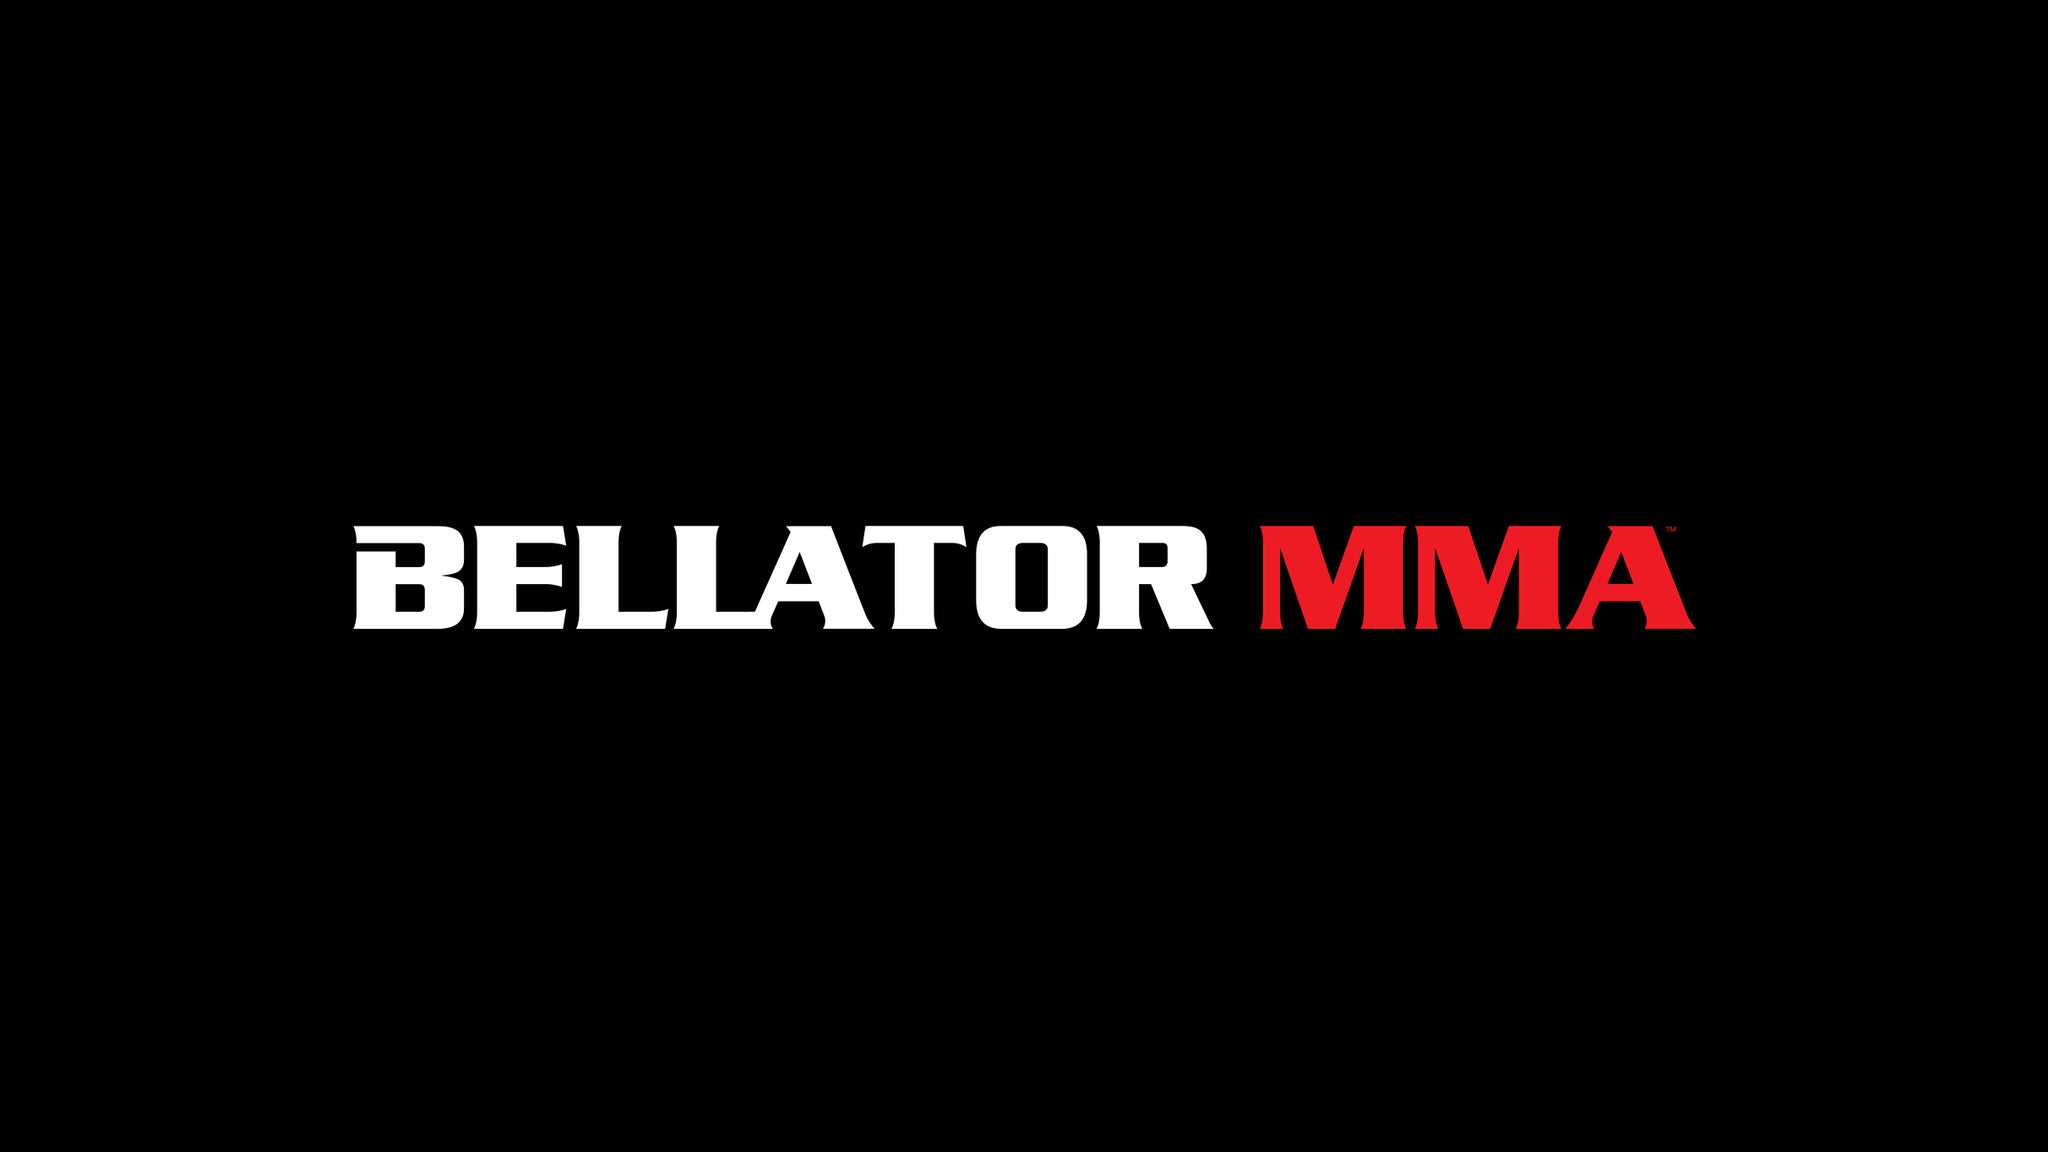 Bellator MMA 293 at Pechanga Resort Casino